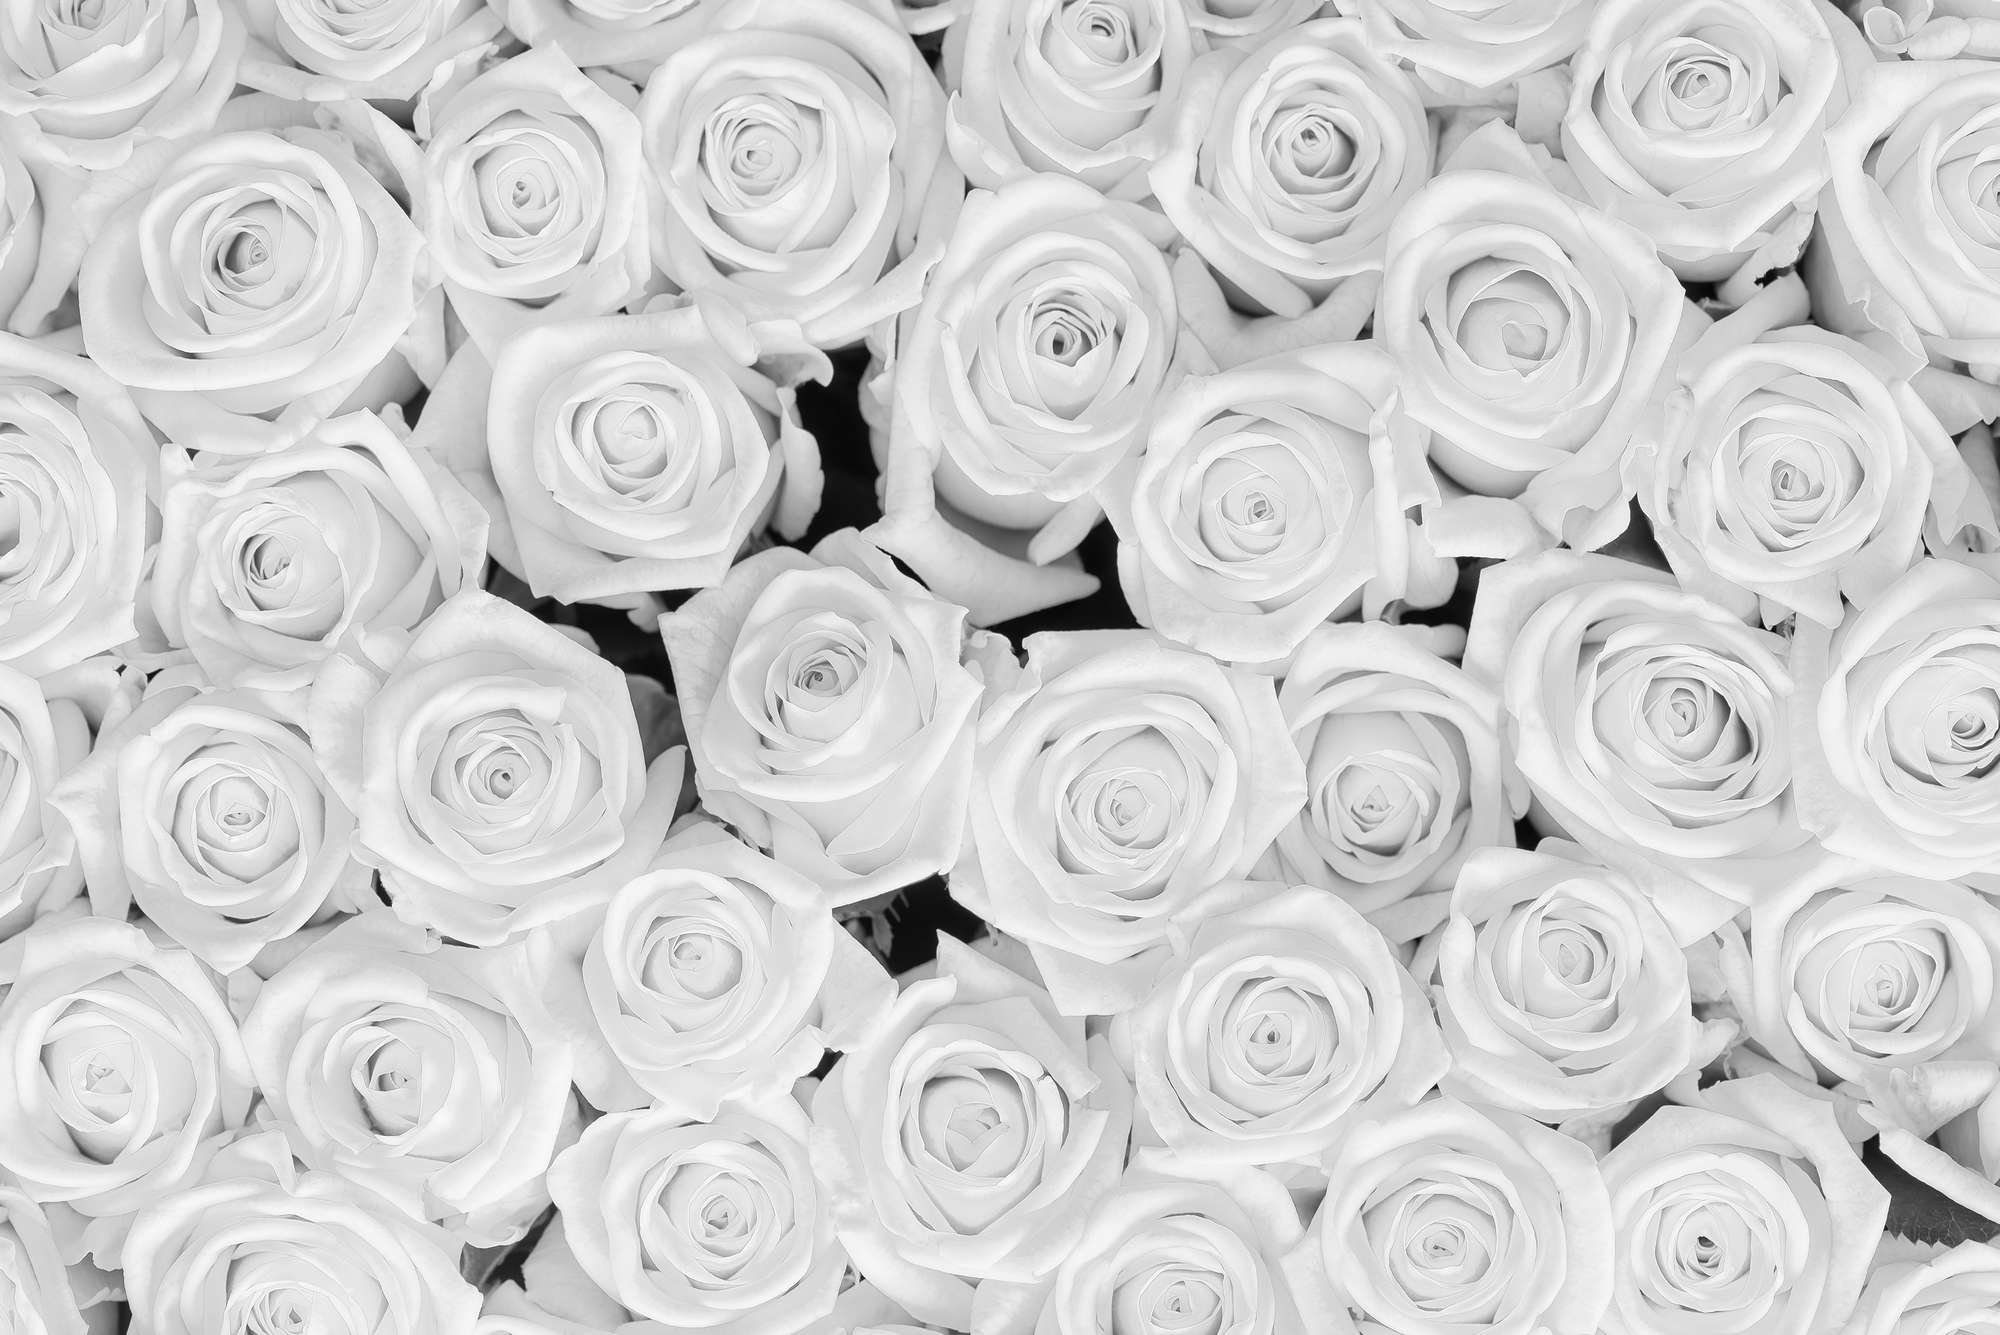             Papier peint végétal roses blanches sur intissé lisse premium
        